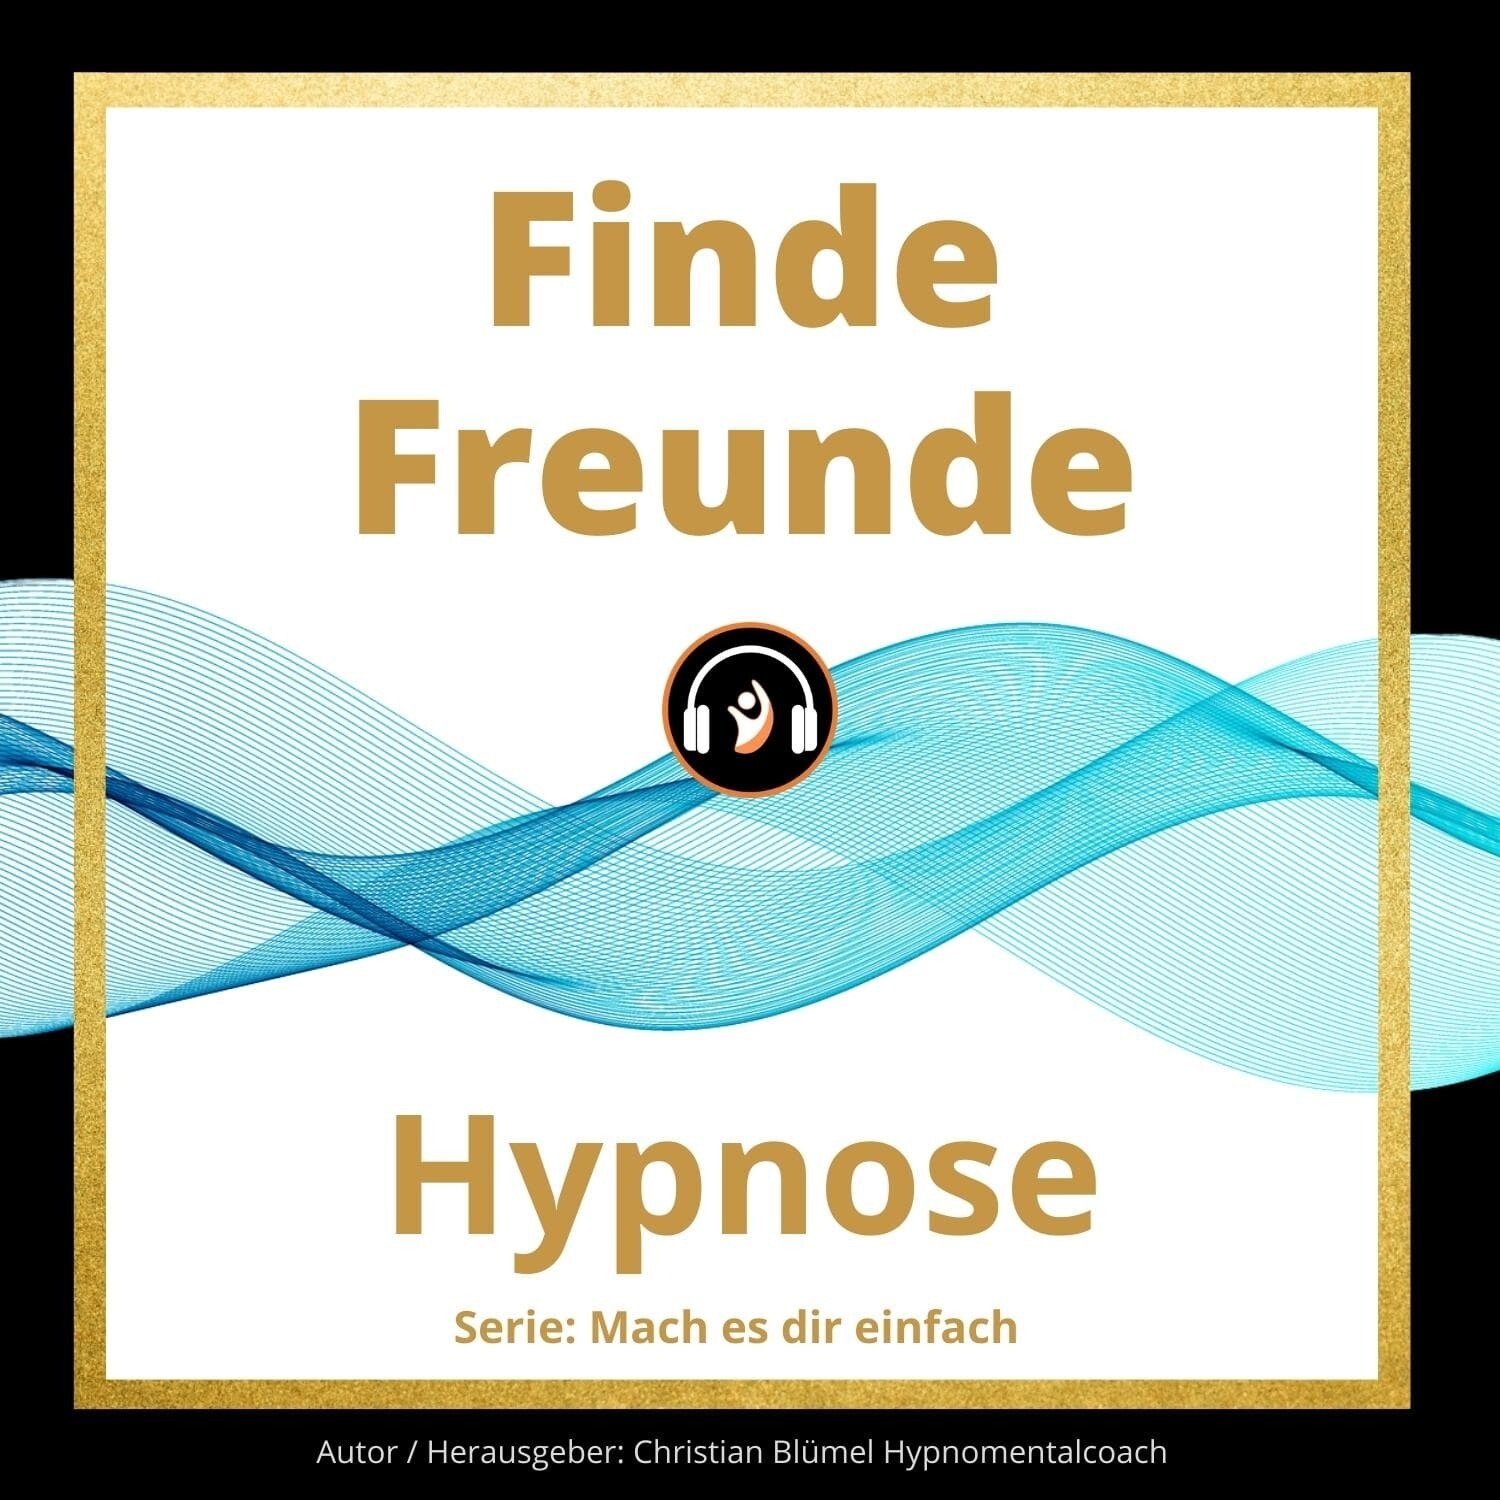 Audio Hypnose: Finde Freunde - Mach es dir einfach